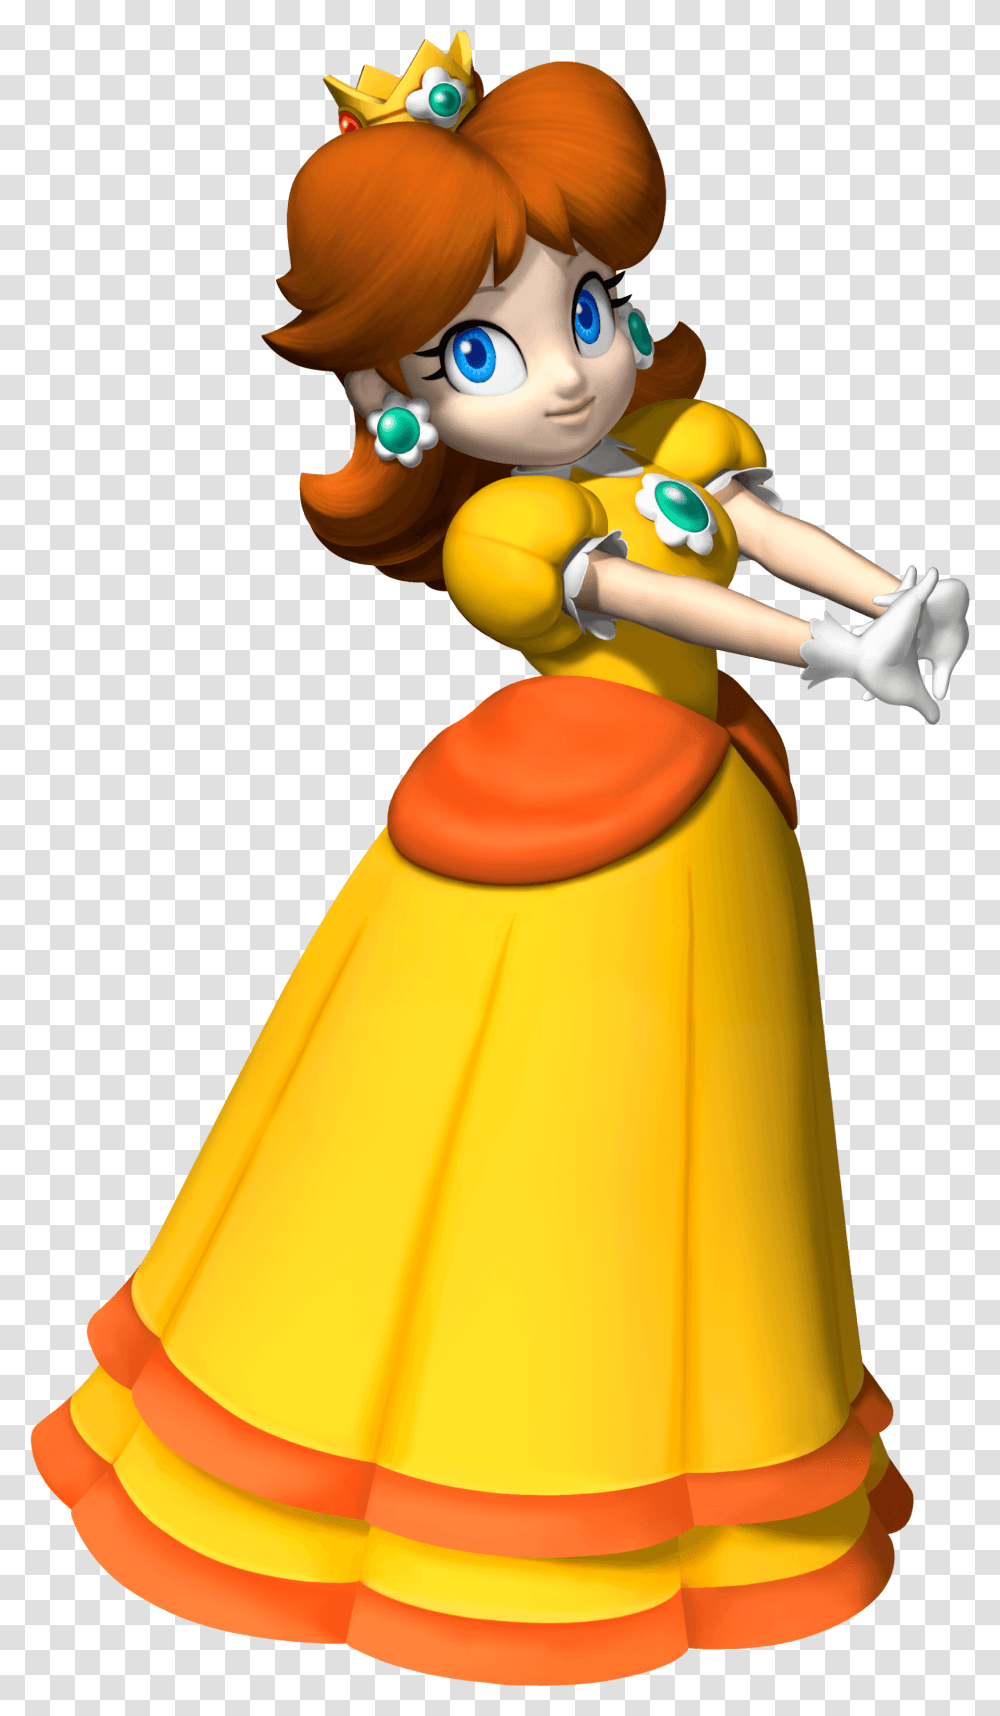 Princess Peach Clipart Mario Party Super Mario Princess Daisy, Figurine, Toy, Helmet Transparent Png